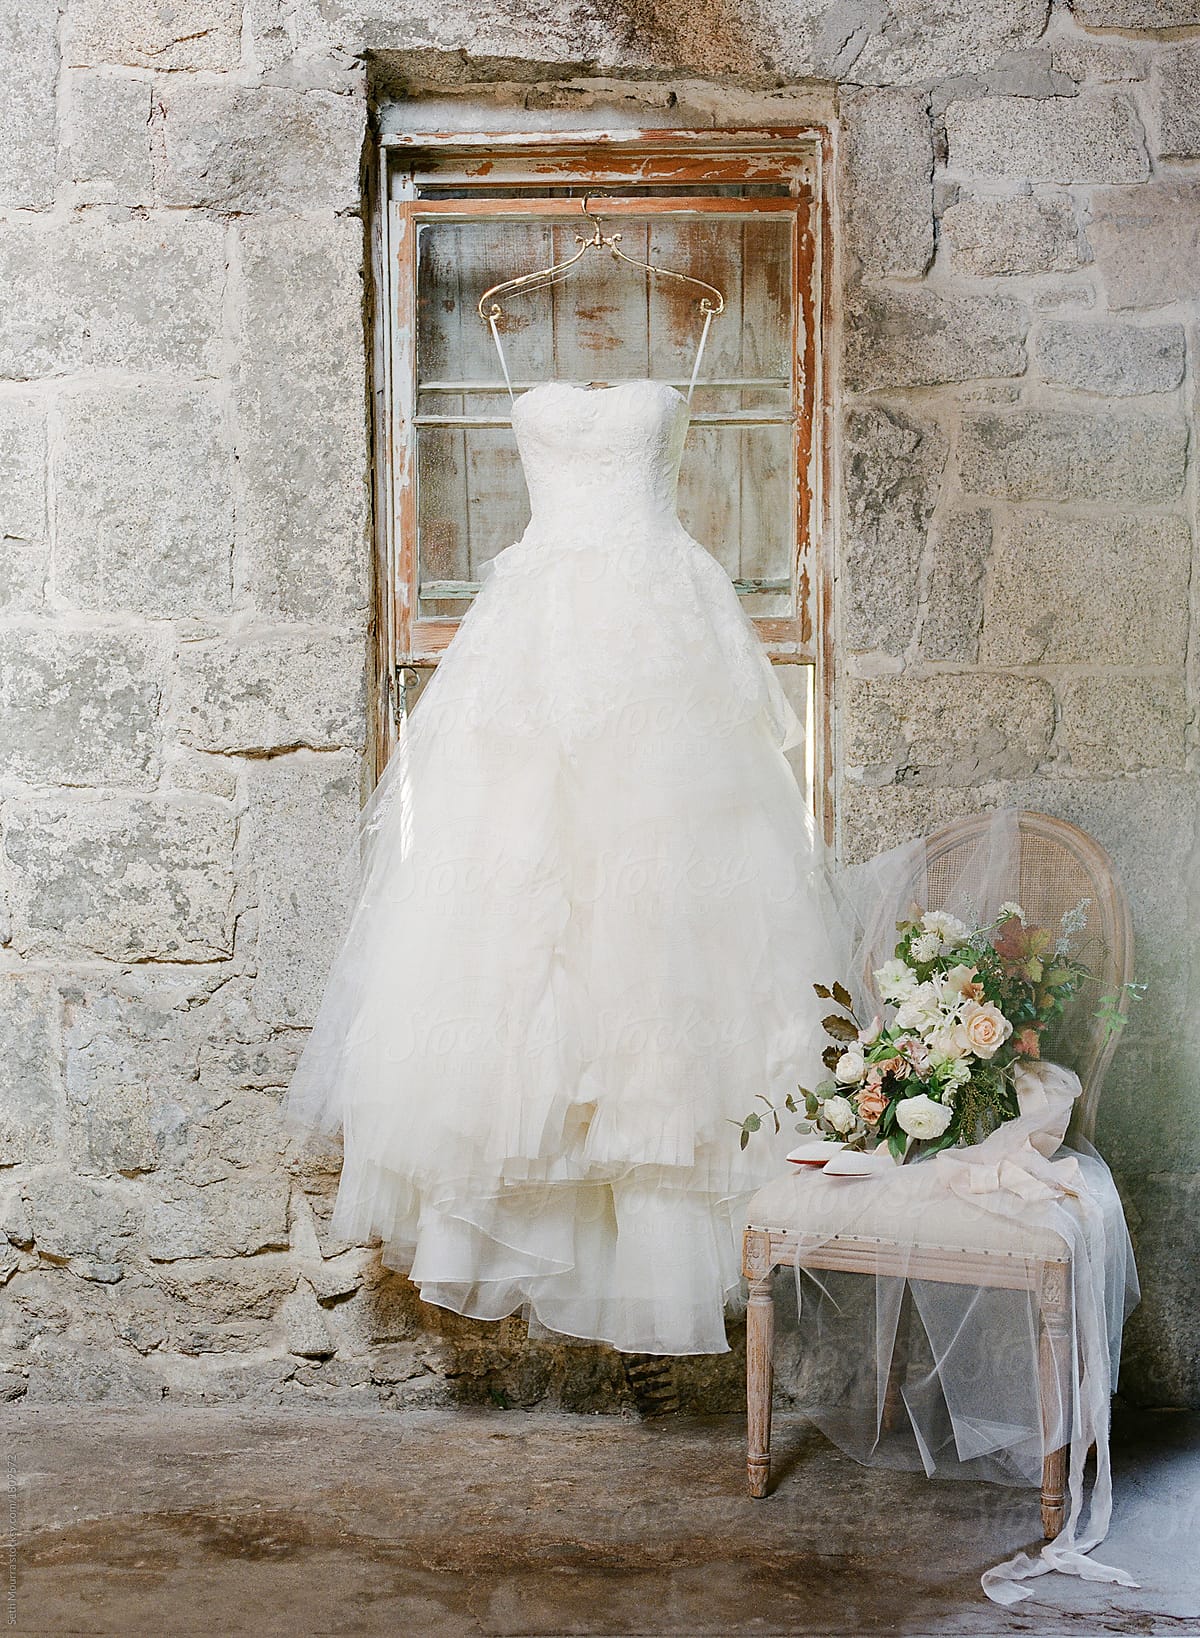 Hanging wedding gown & Brides details